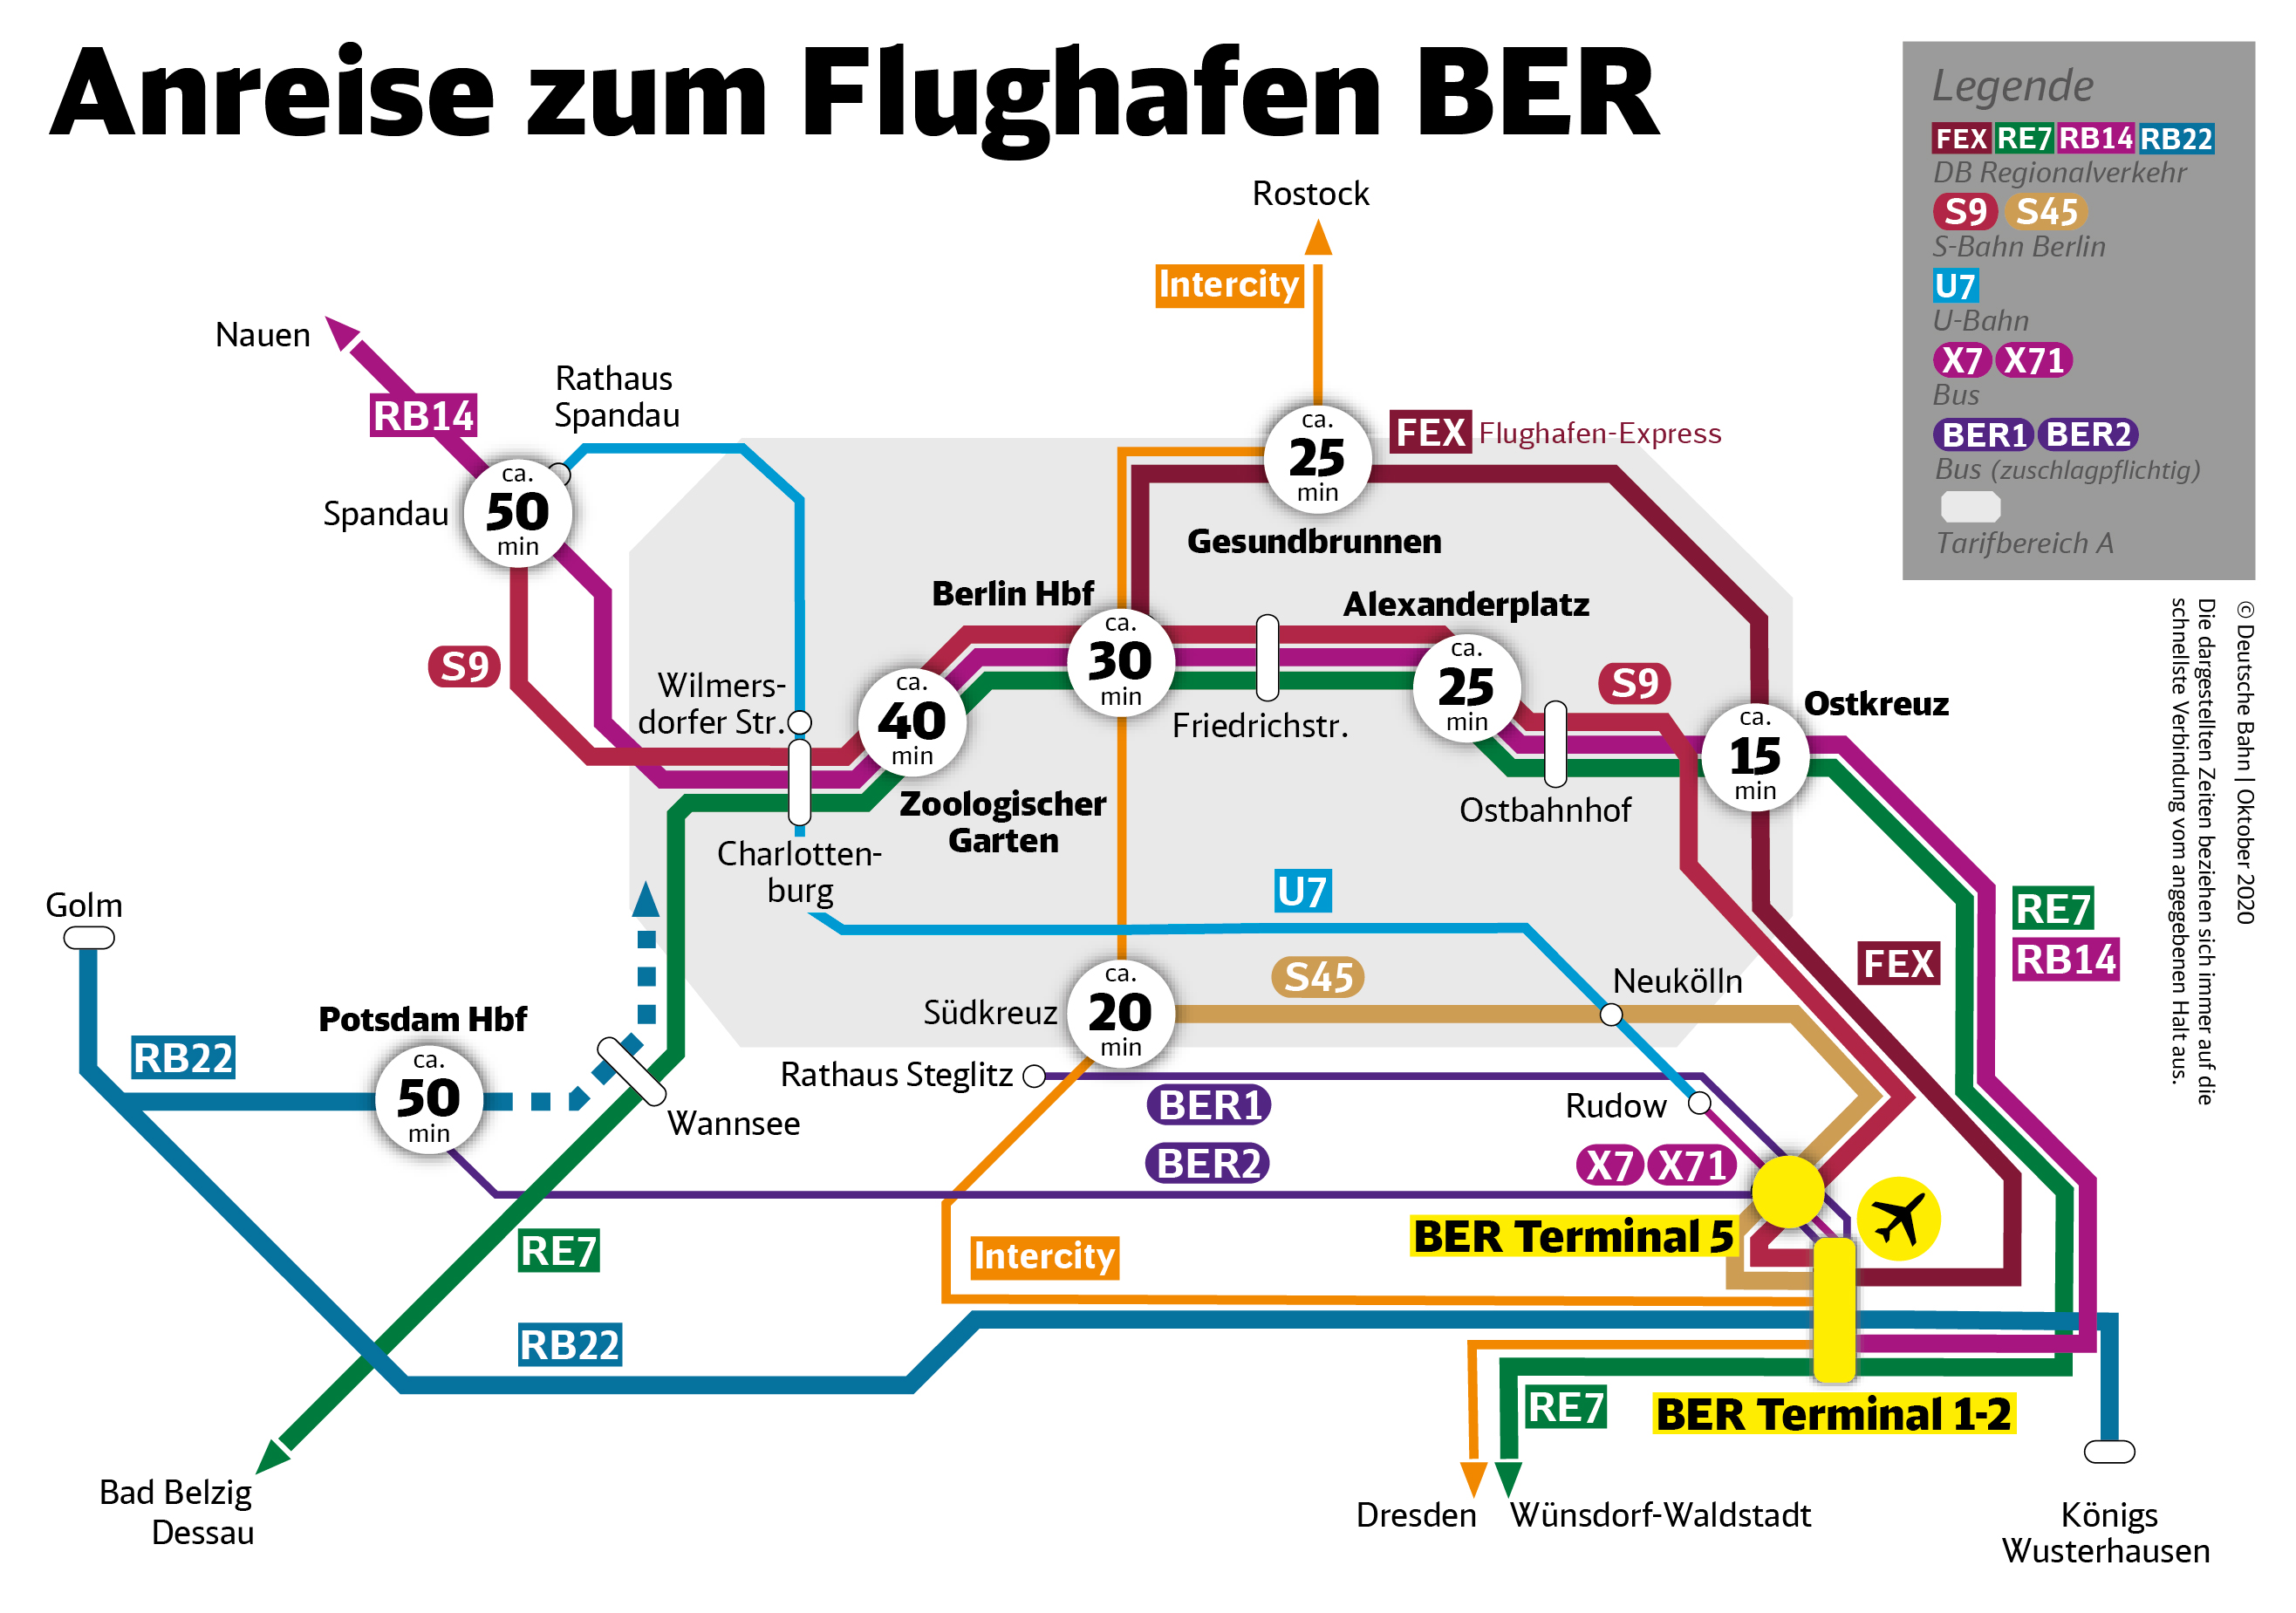 Alles startklar: Züge rollen zum BER | Deutsche Bahn AG